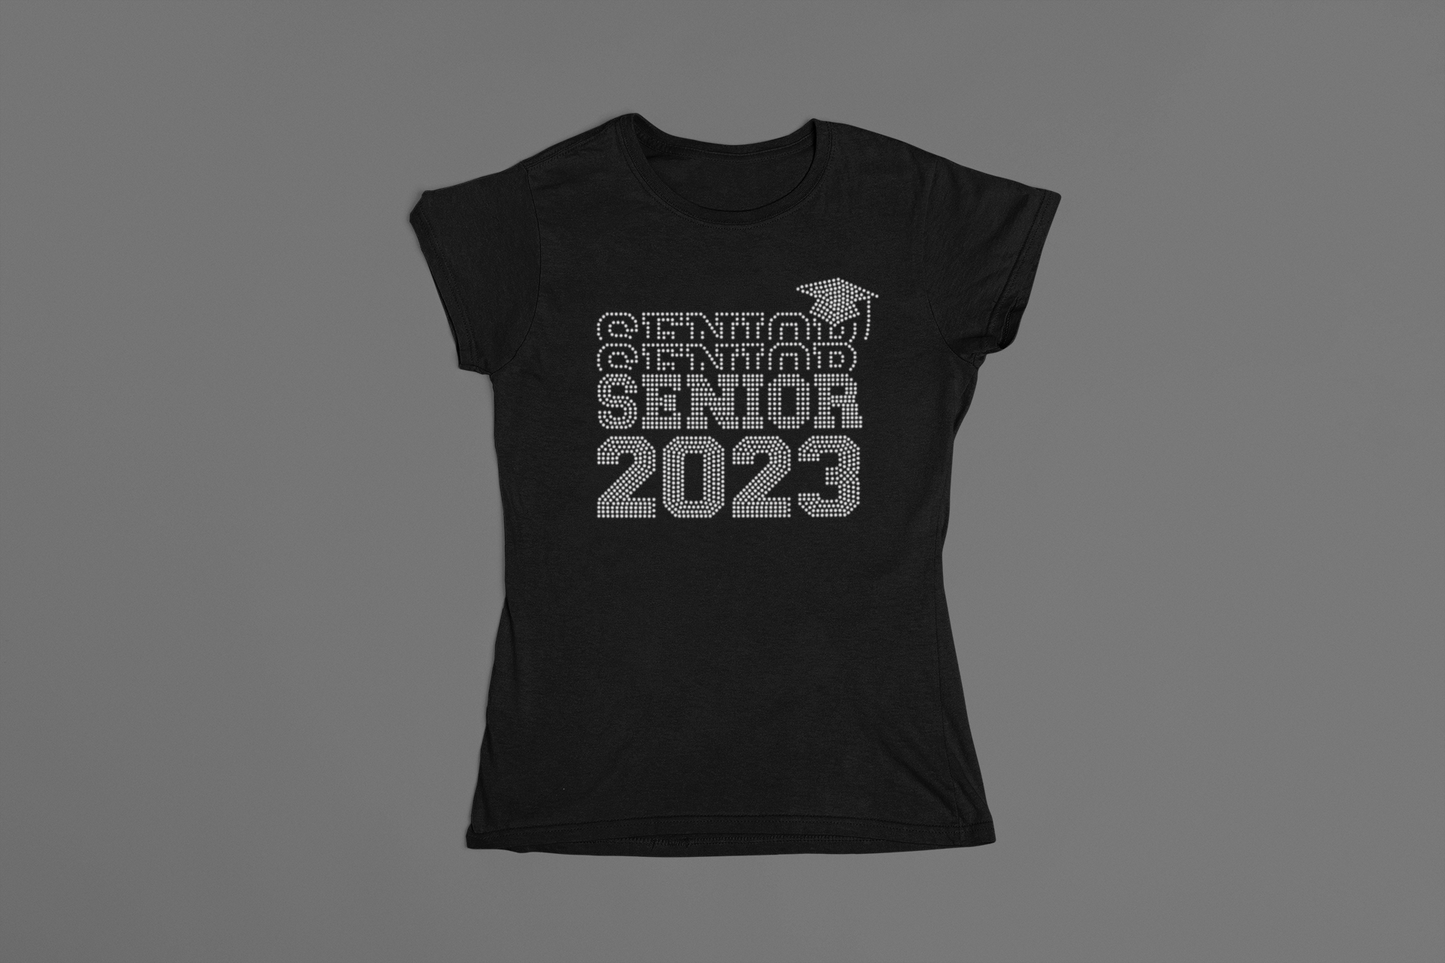 Senior 2023 Stacked with Cap Rhinestone T-Shirt